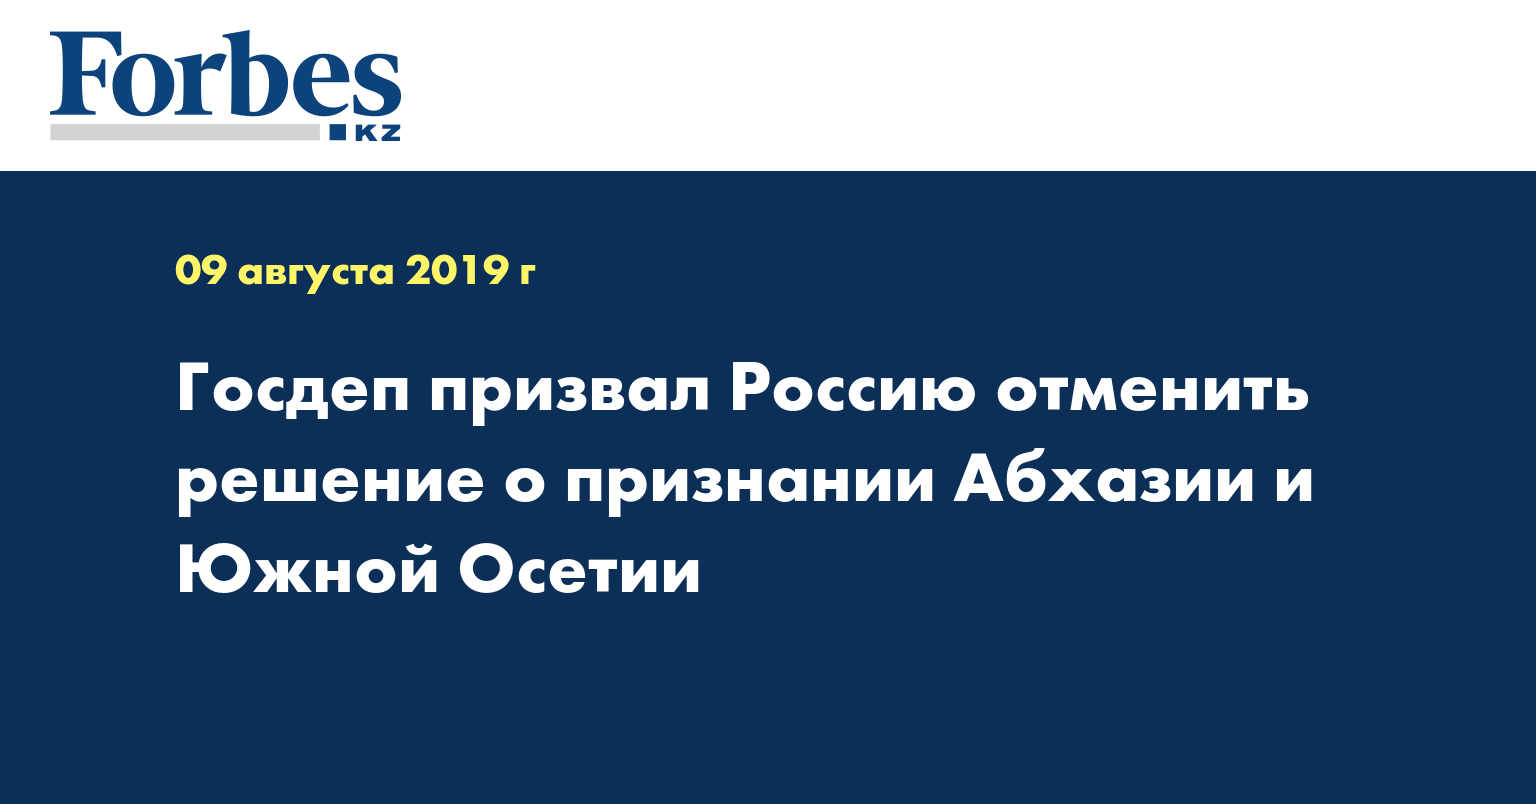 Госдеп призвал Россию отменить решение о признании Абхазии и Южной Осетии